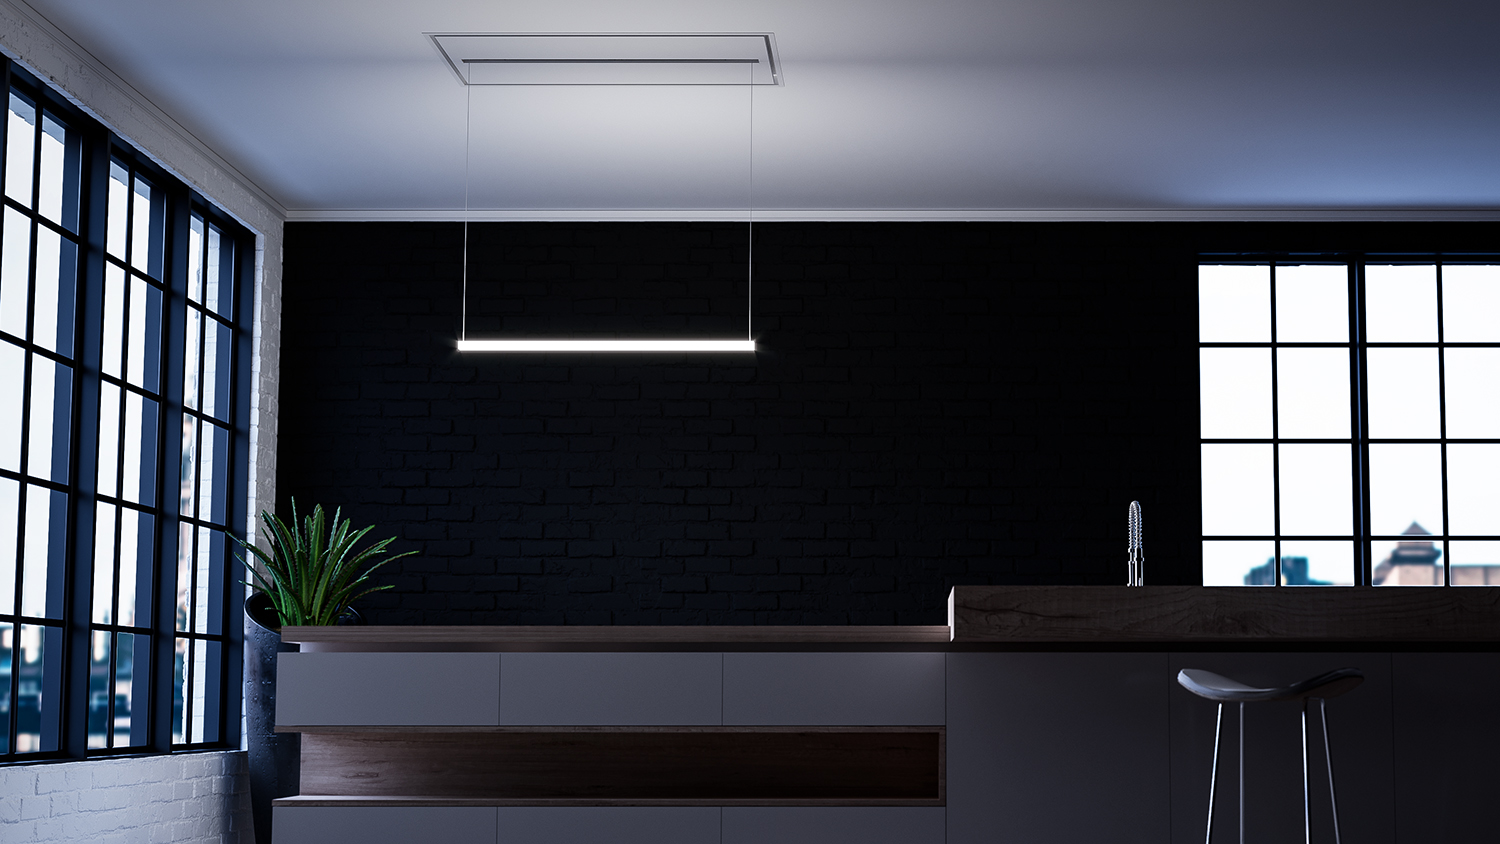 Luksusowy okap kuchenny Sirius sufitowy Line light we współczesnej kuchni w luksusowym domu okapy premium